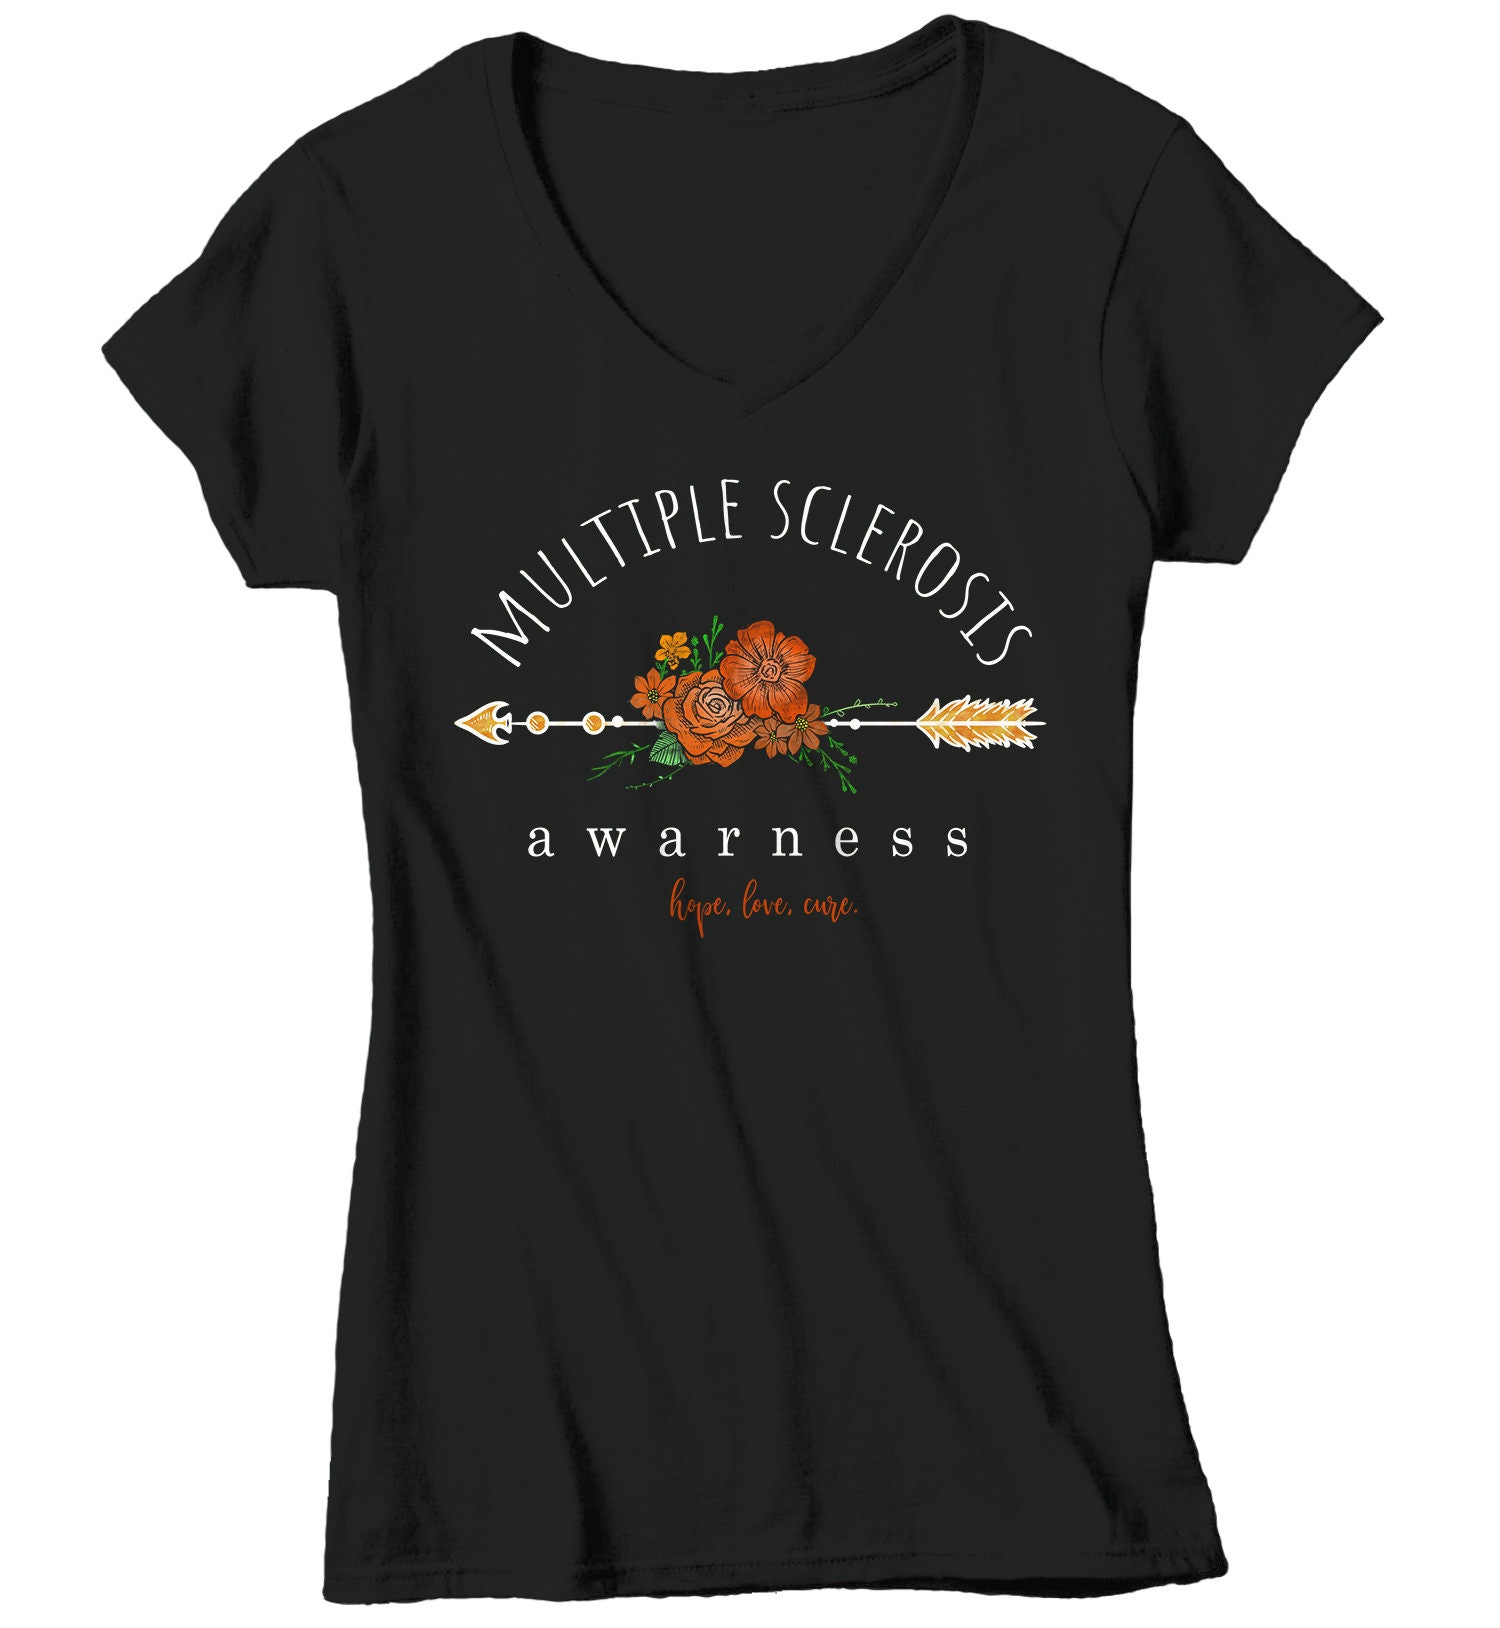 Women's Multiple Sclerosis Awareness T-shirt Hope Love | Etsy